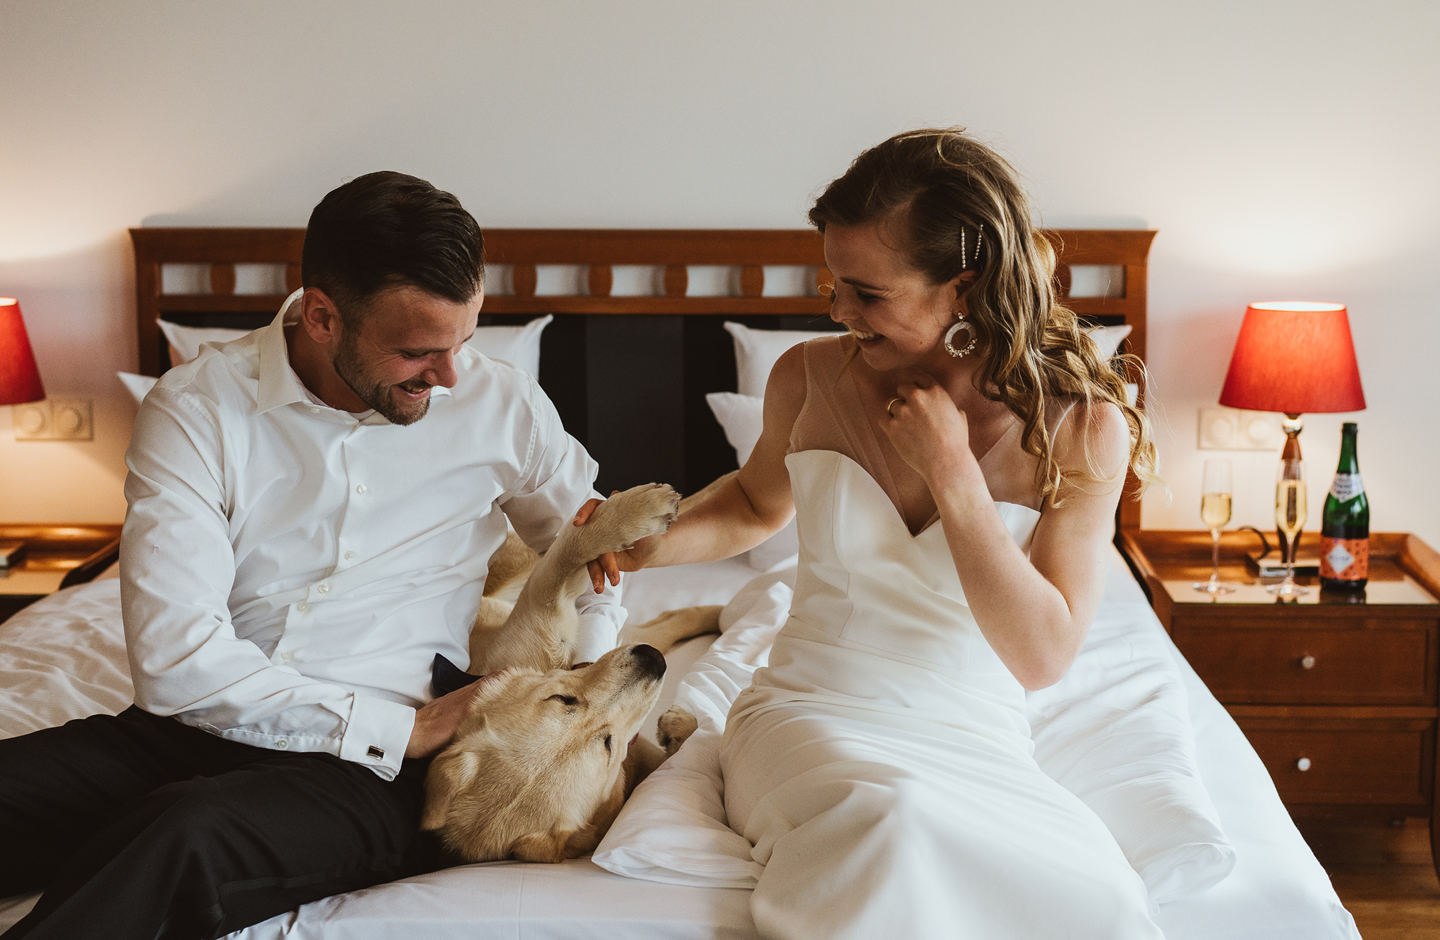 Angehendes Ehepaar sitzt im Hochzeitsoutfit auf dem Bett und spielt mit dem Hund